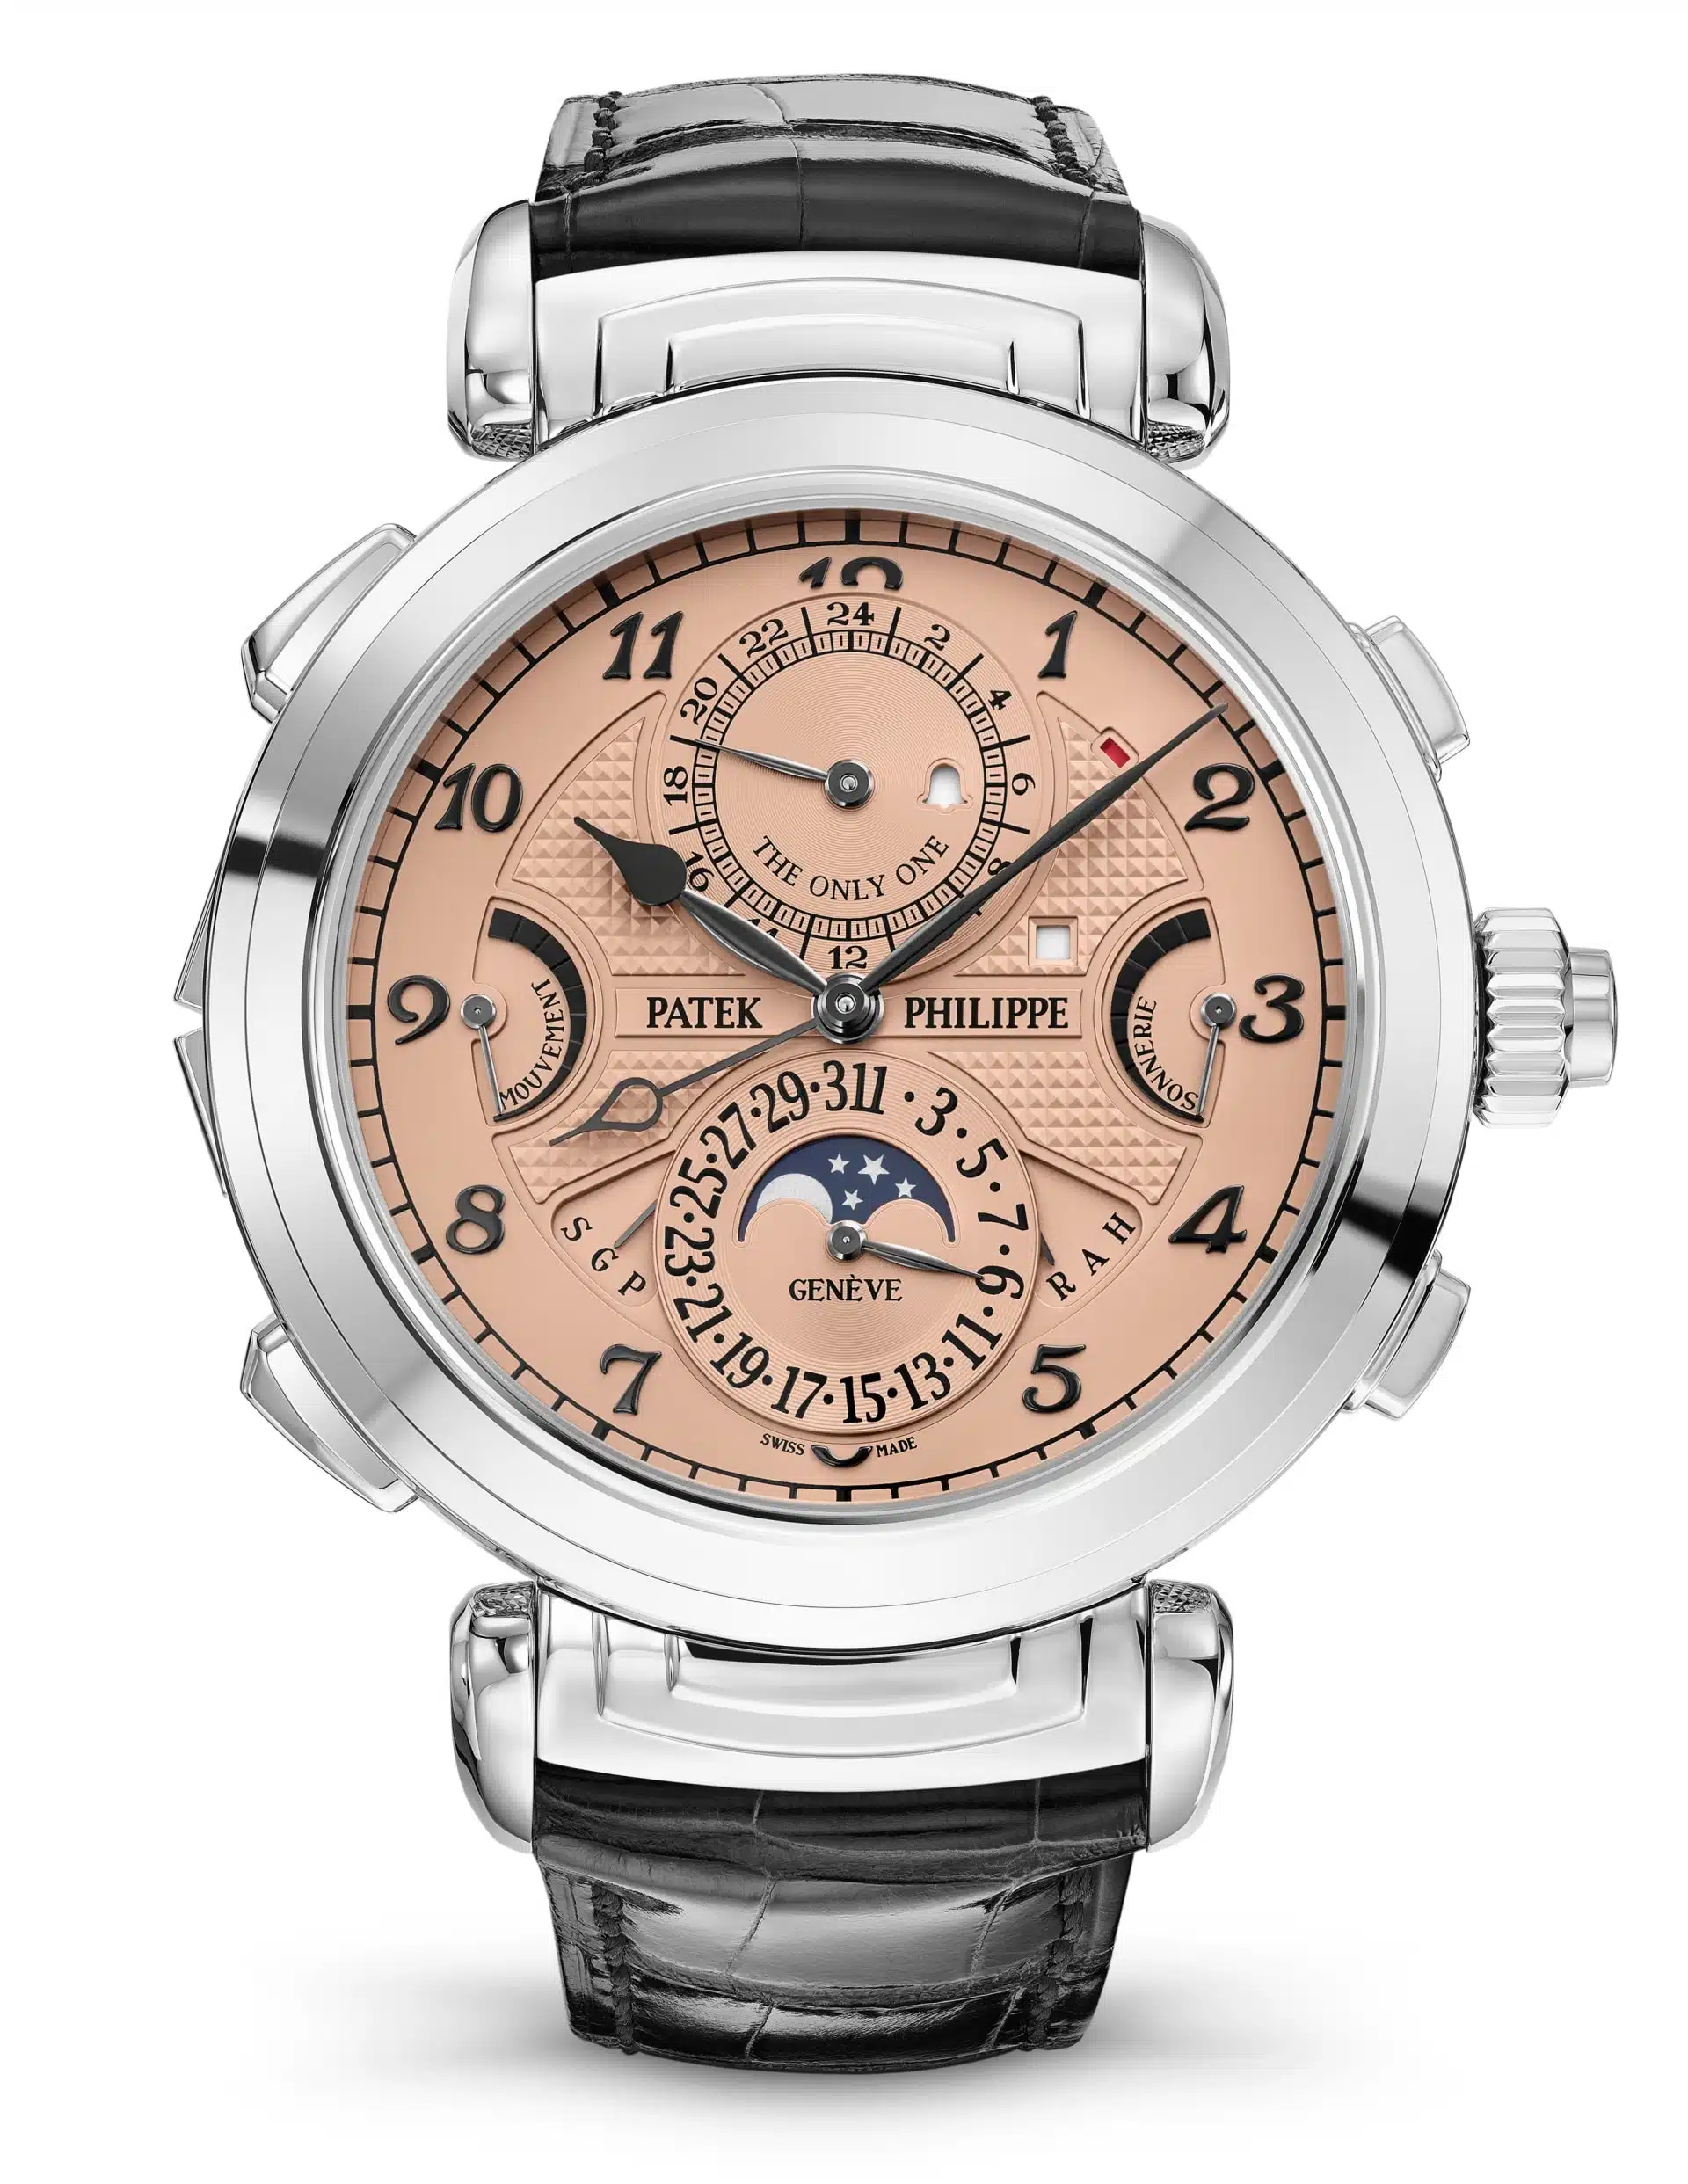 Patek Philippe GrandMaster Chime référence 6300A-010 - montre vendue à Only Watch 2019